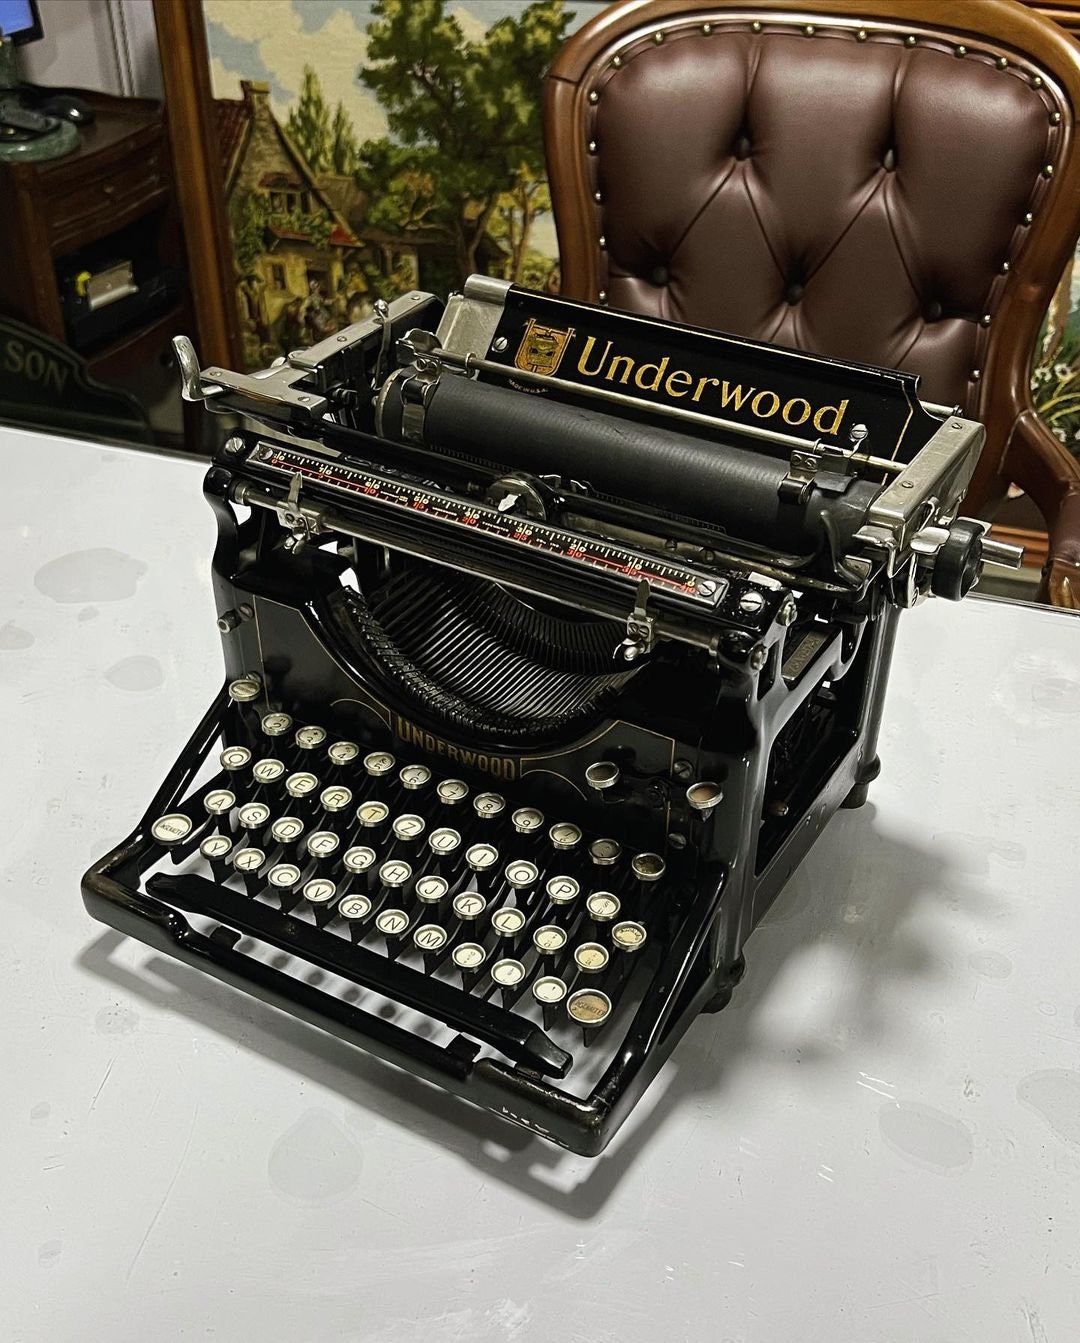 Valentine's day | Underwood Typewriter| Antique Typewriter | Working Typewriter | Working Perfectly,typewriter working